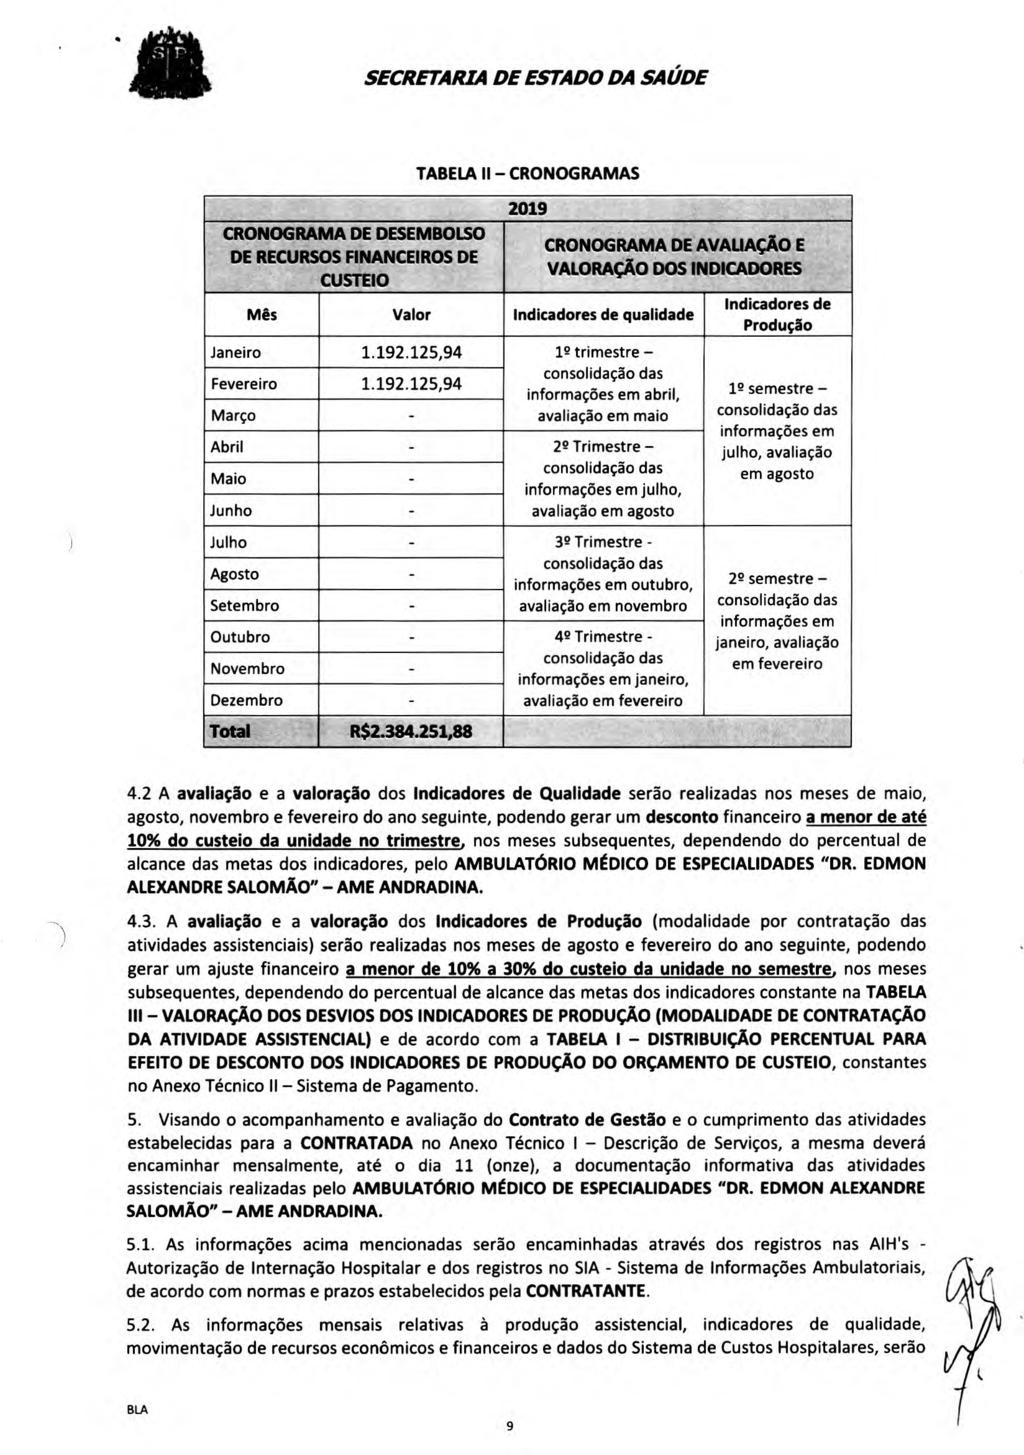 CRONOGRAMA DE DESEMBOLSO DE RECURSOS FINANCEIROS DE CUSTEIO TABELA II CRONOGRAMAS 2019 CRONOGRAMA DE AVALIAÇÃO E - VALORAÇAO DOS INDICADORES Mês Valor Indicadores de qualidade Janeiro 1.192.